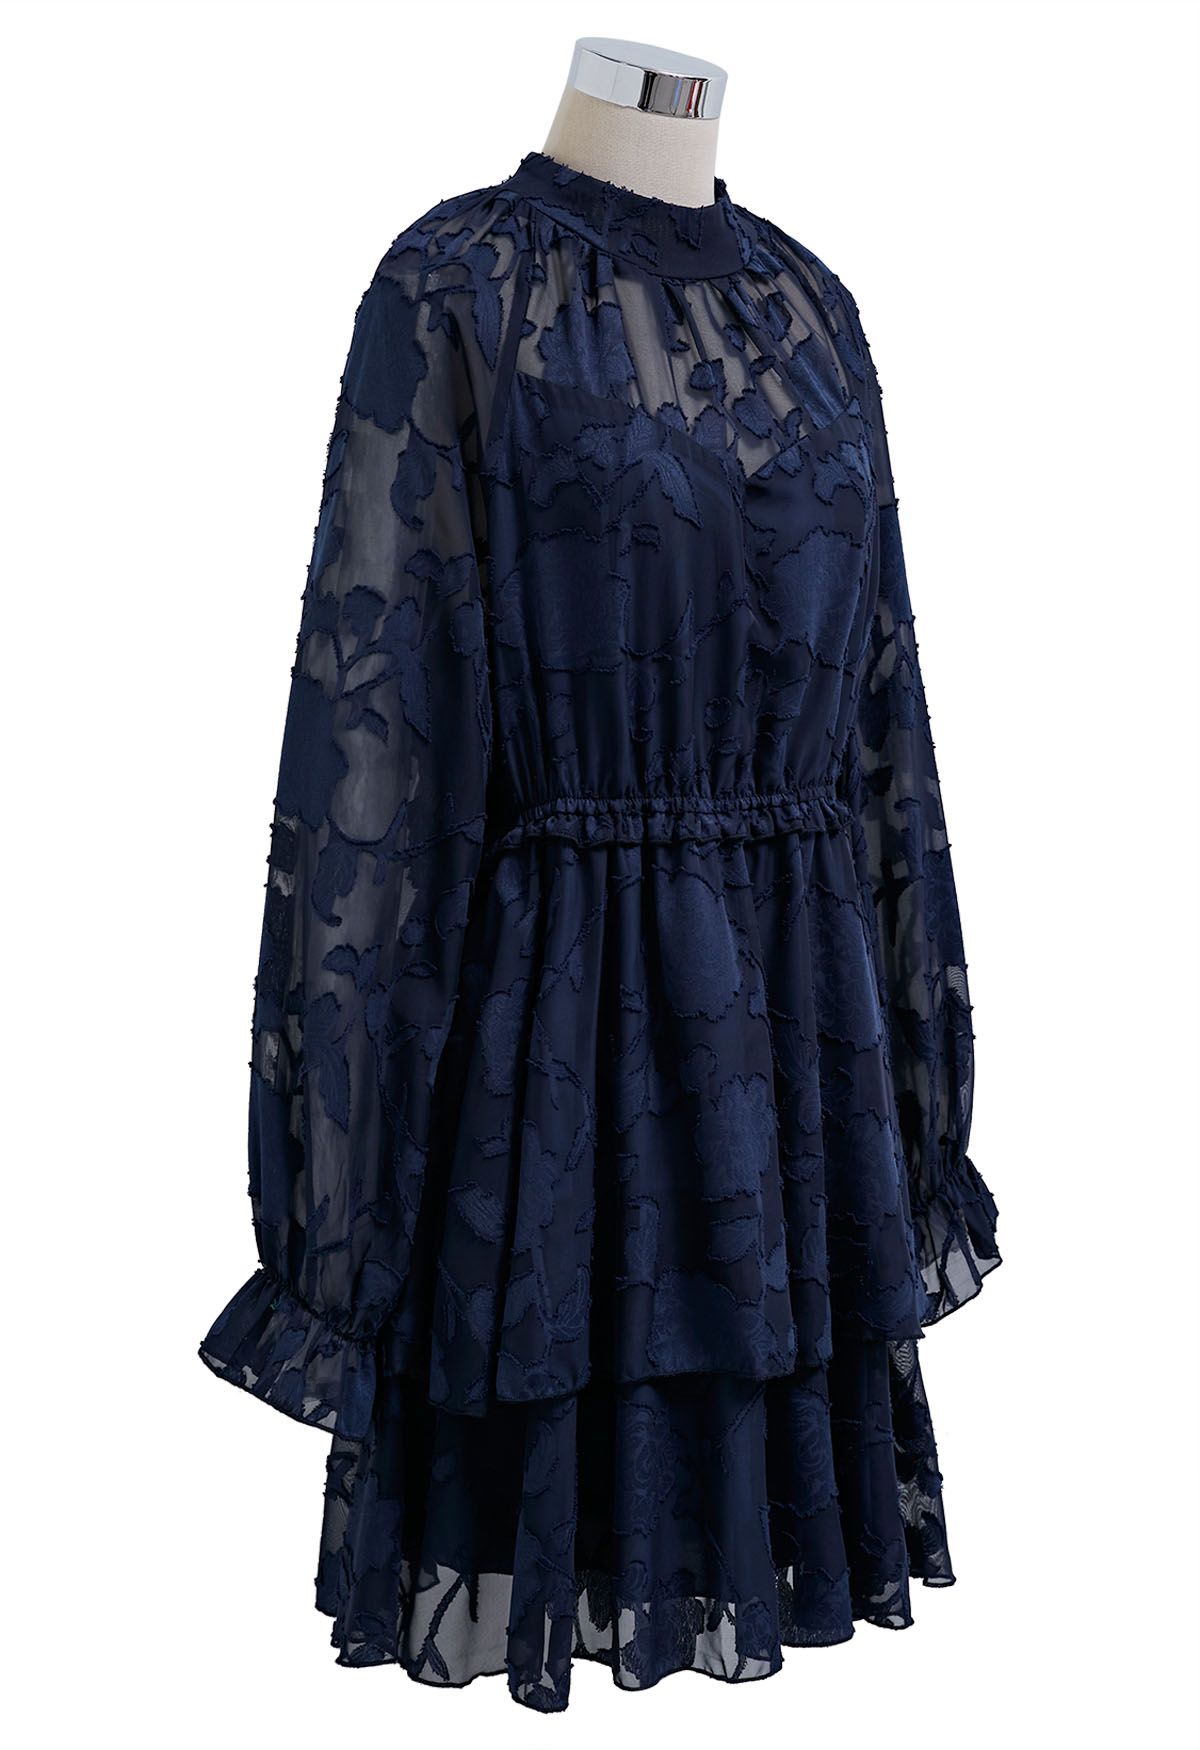 Mini-robe à plusieurs niveaux en maille jacquard florale, bleu marine